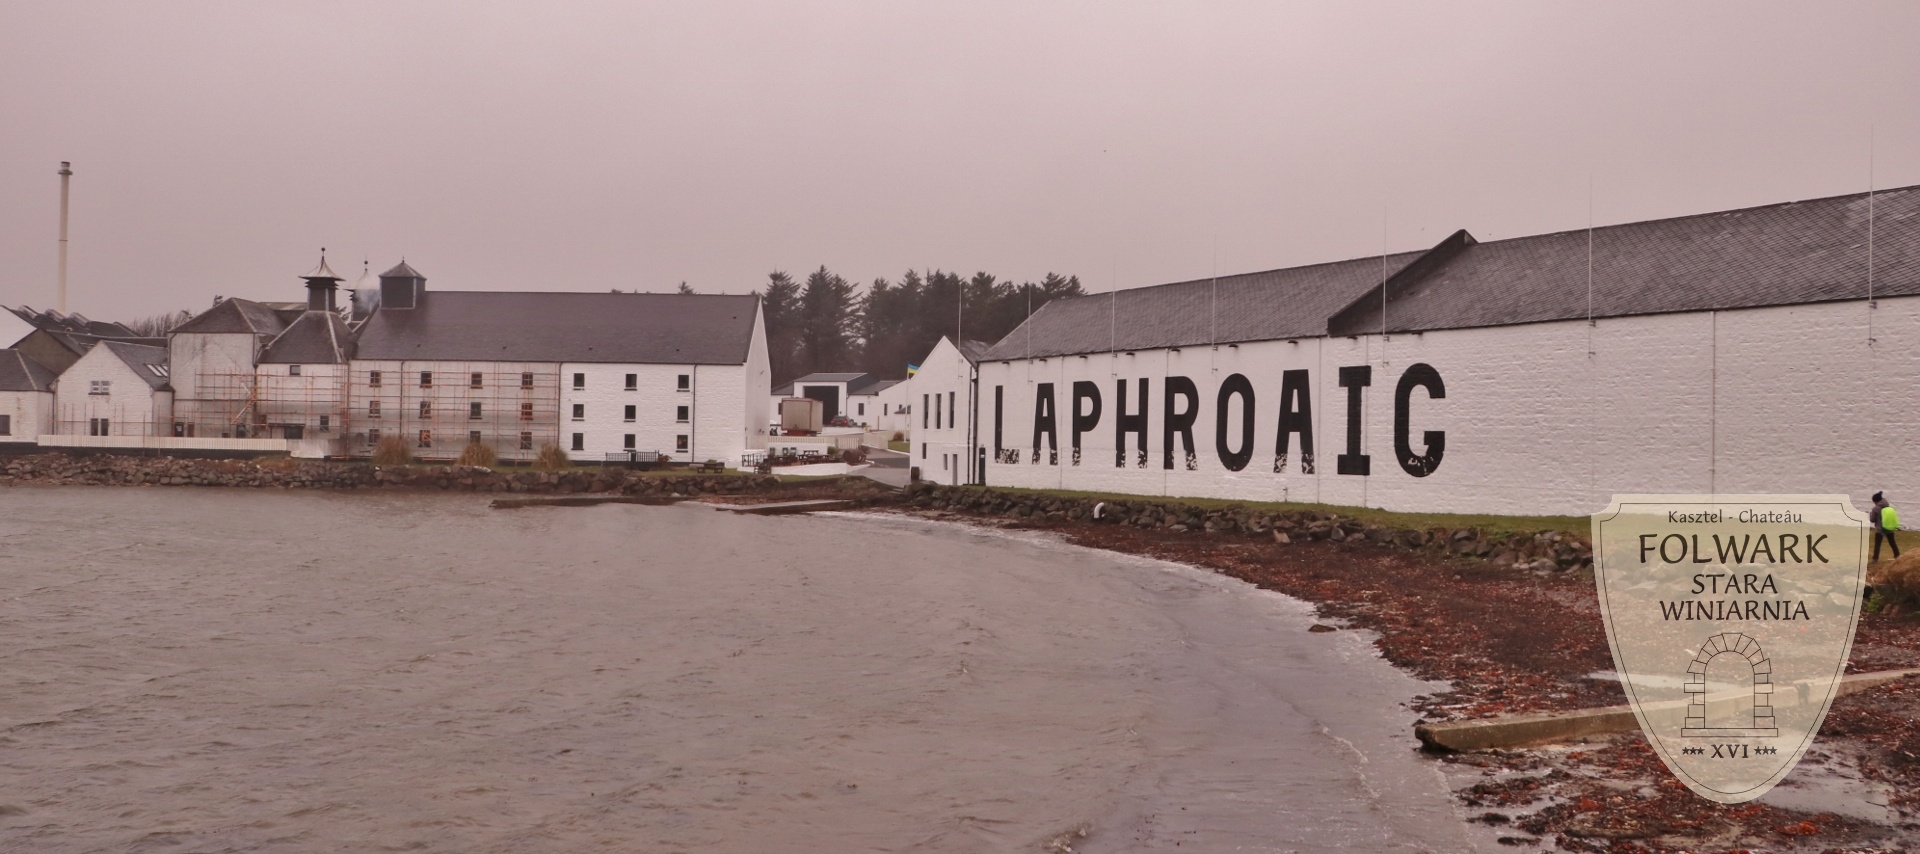 Destylarnia Laphroaig Klub Wina Folwark Stara Winiarnia whisky z Islay